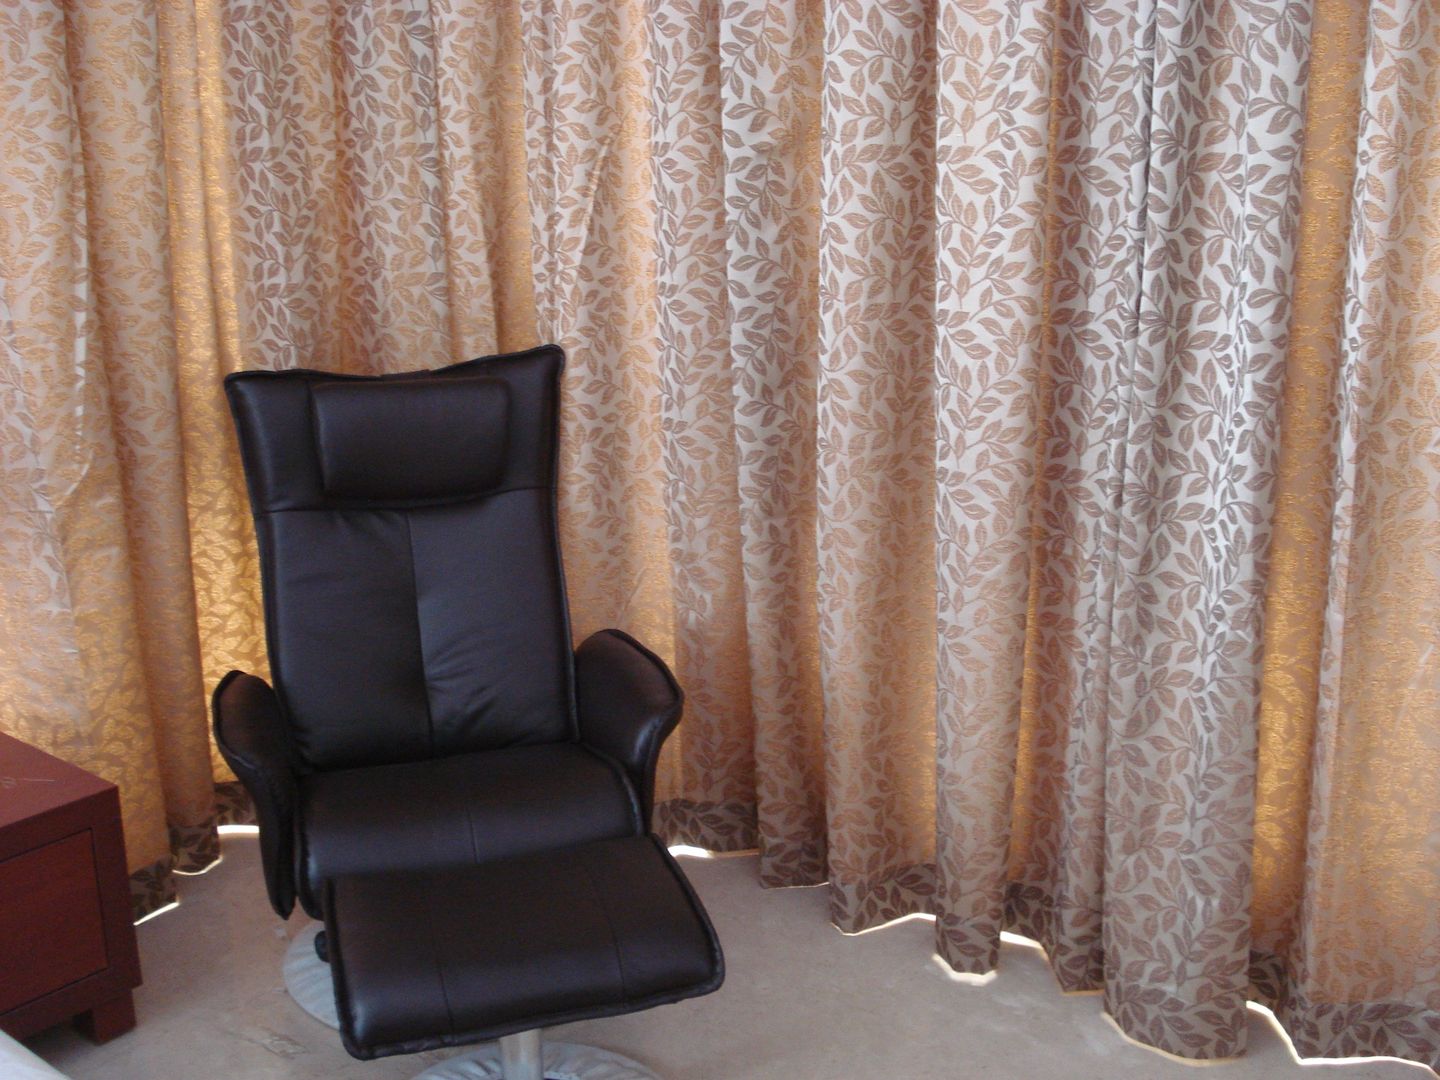 Private Apartment in Mumbai - 2300 sq. ft., DS DESIGN STUDIO DS DESIGN STUDIO Minimalist bedroom Sofas & chaise longue